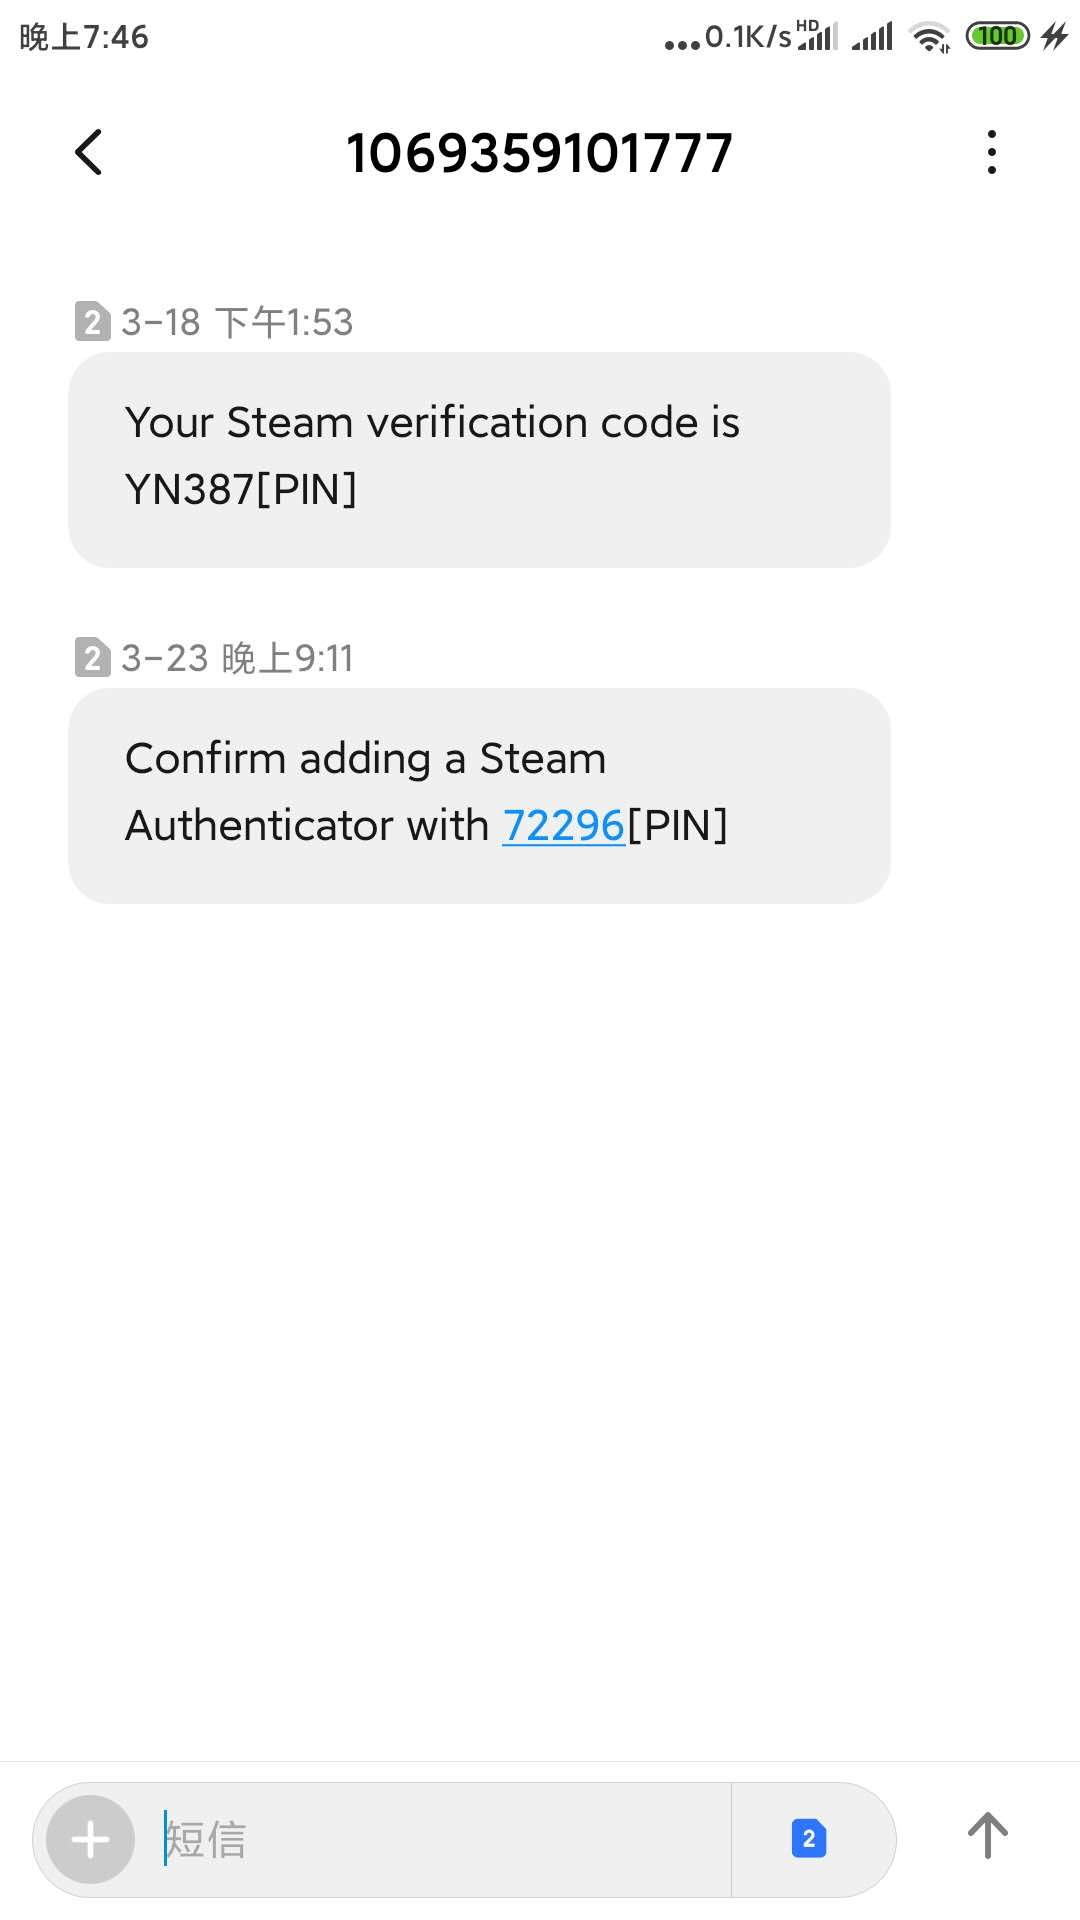 Steam账号被盗后 账号找回 Pubg解封经验分享 Jawa D的博客 Csdn博客